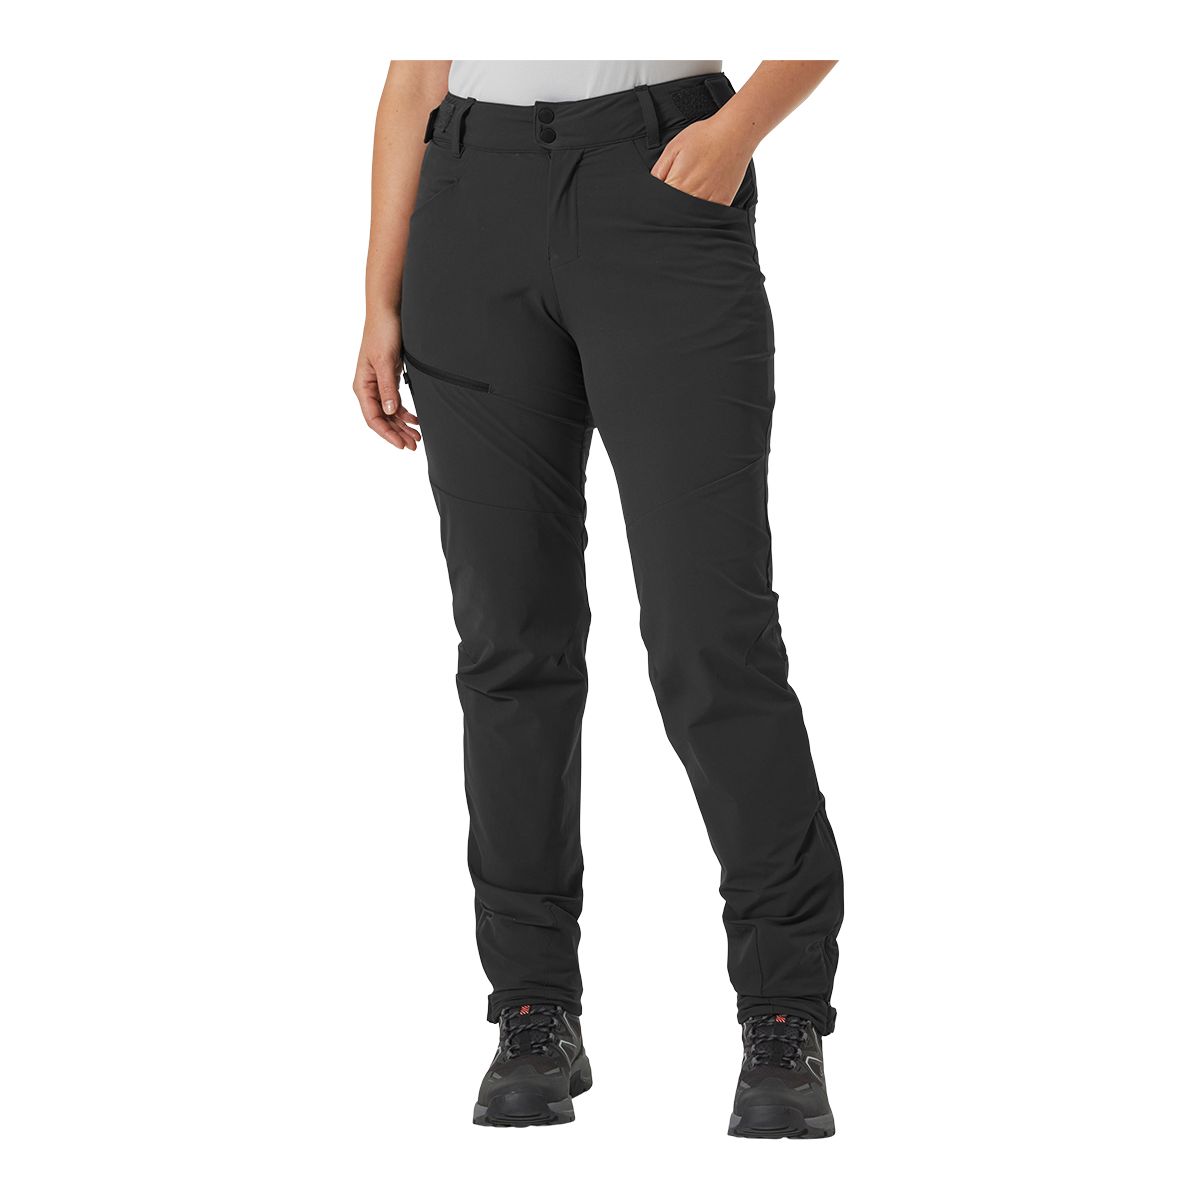 Eddie Bauer Women's ClimaTrail Cargo Crop Pants, Black, 2 